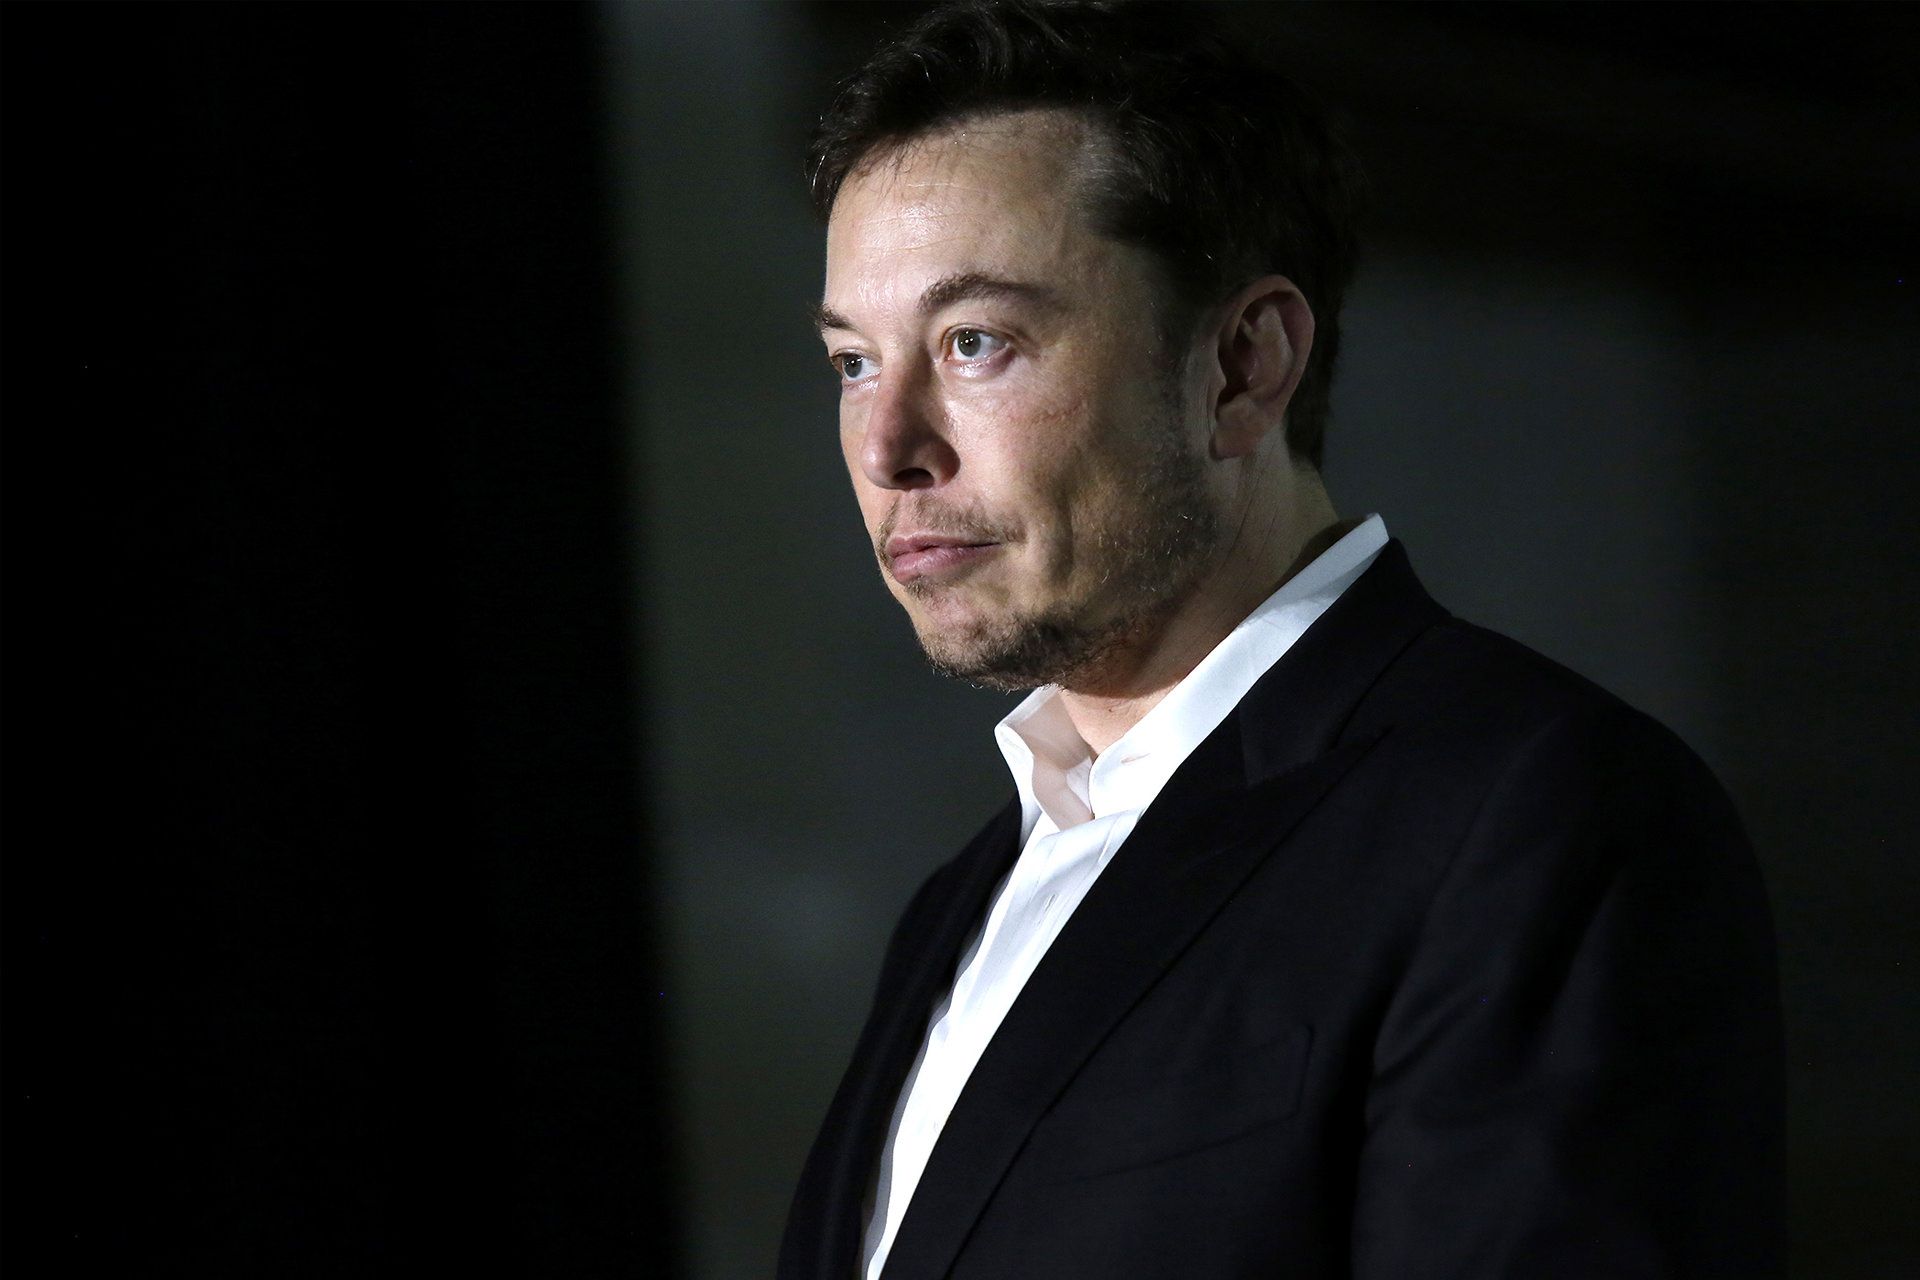 نمای سه رخ ایلان ماسک / Elon Musk با کت شلوار مشکی